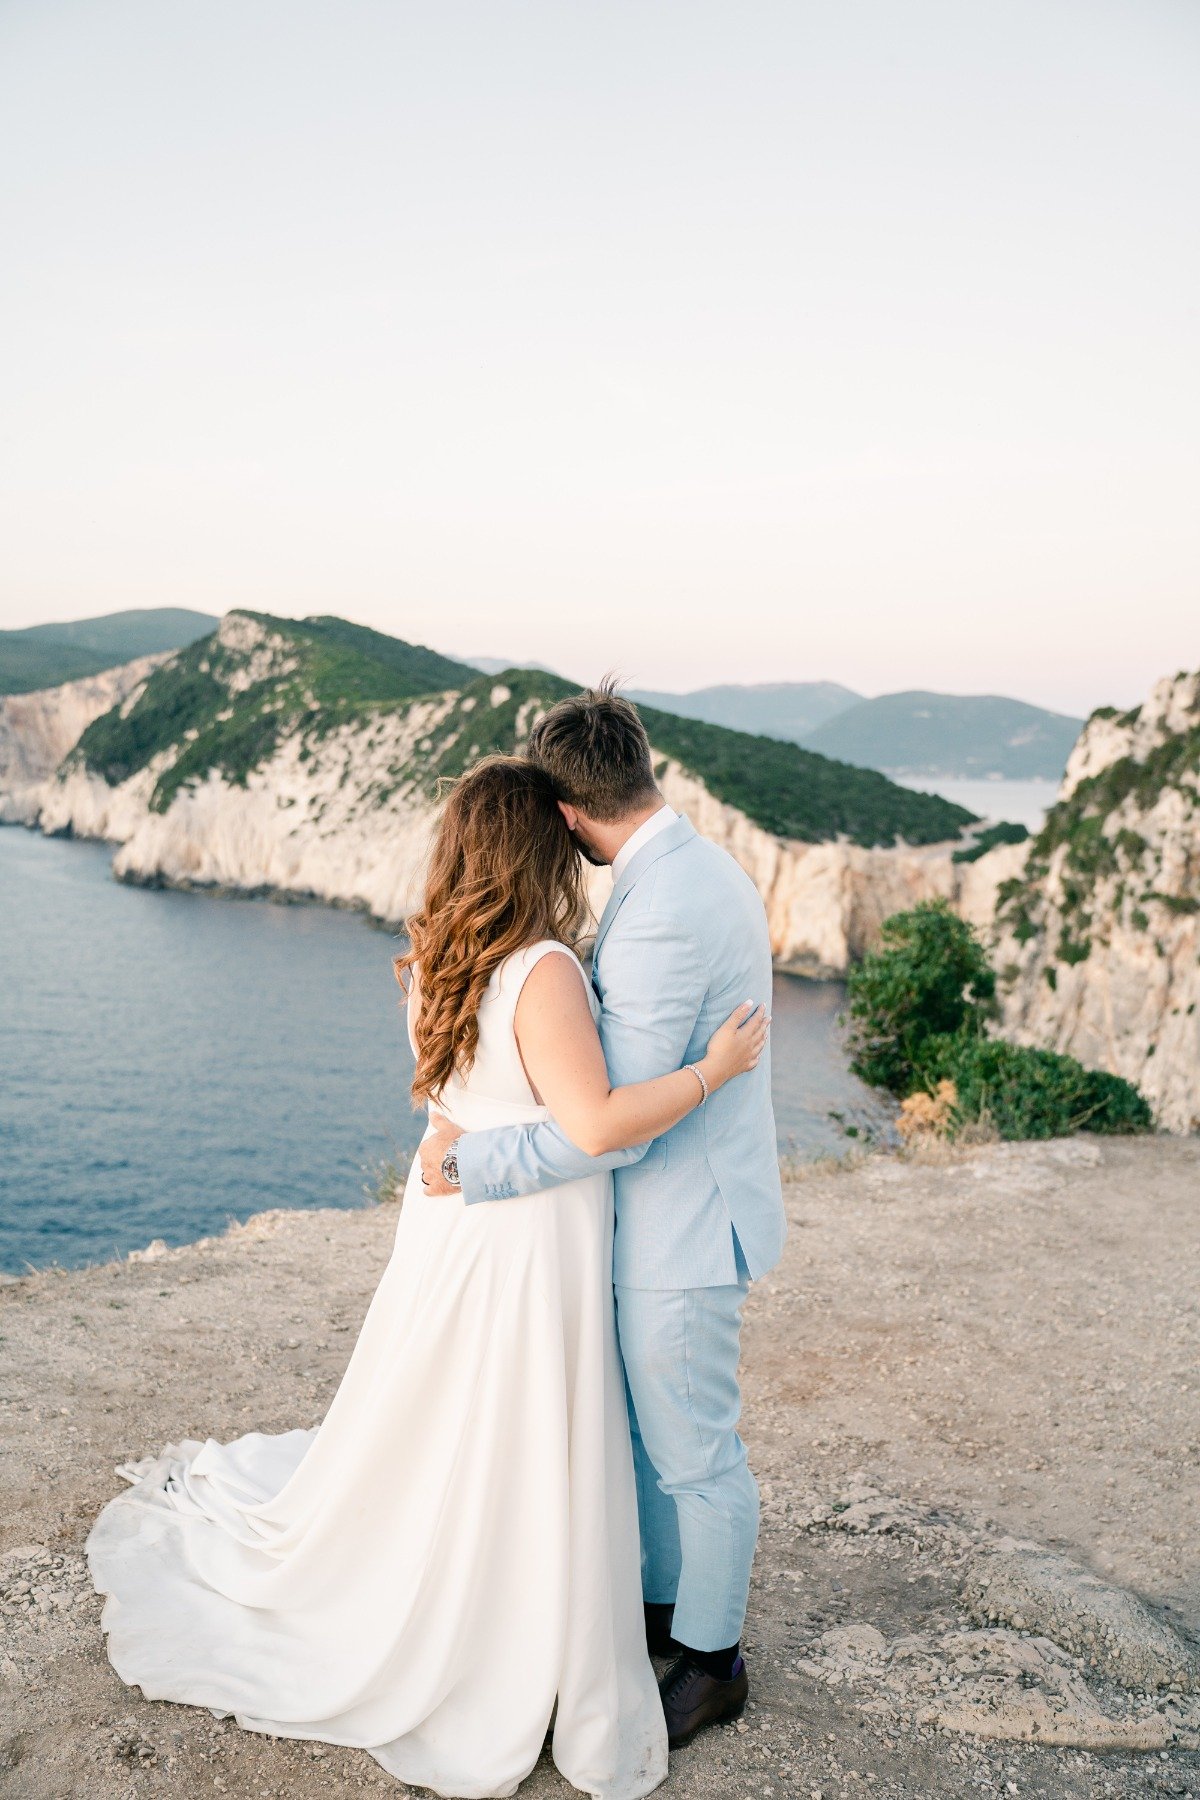 Canadian bride and groom at dreamy Greek island wedding 